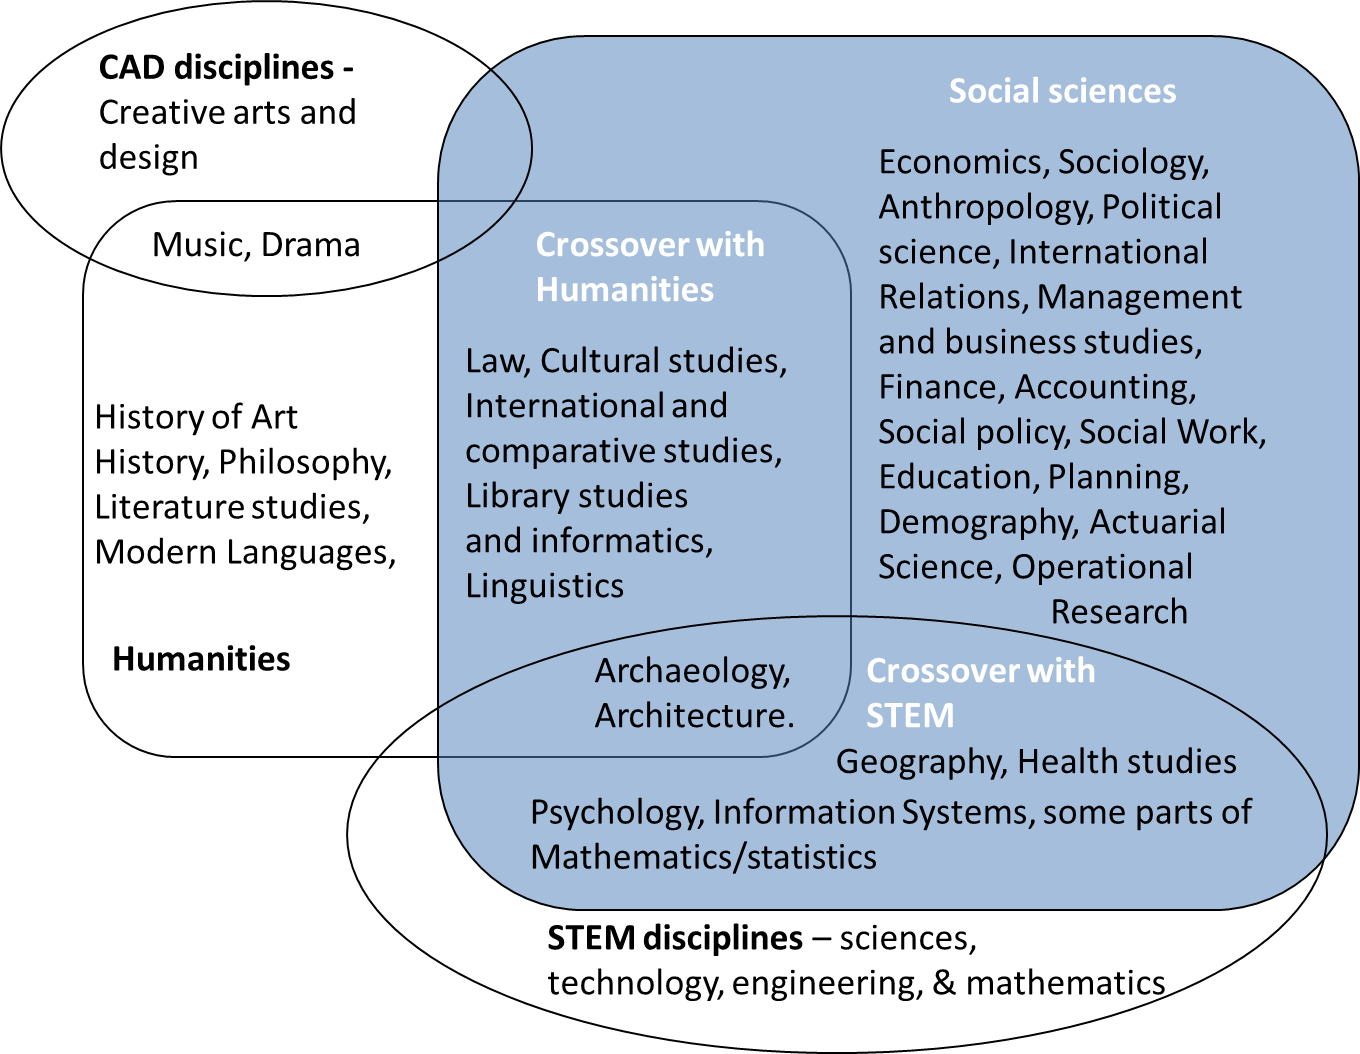 natural science vs social science